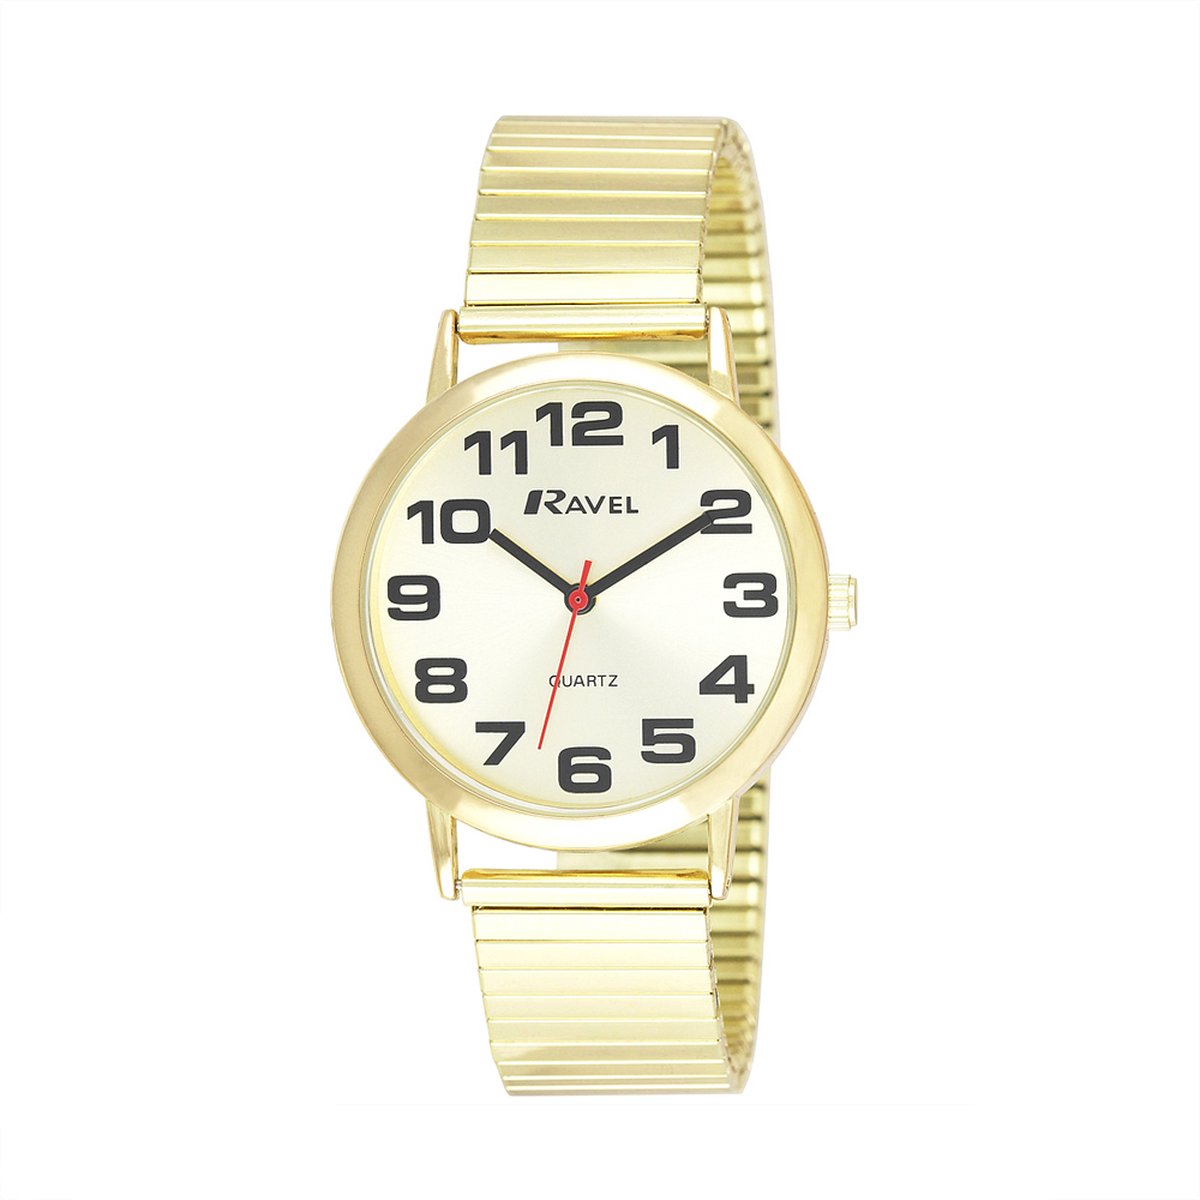 Ravel - heren gemakkelijk te lezen roestvrijstalen expander armband horloge met grote getallen (36mm horlogekast) - Analoge Kwarts - R0208.05.1S - goudkleurig / goude wijzerplaat